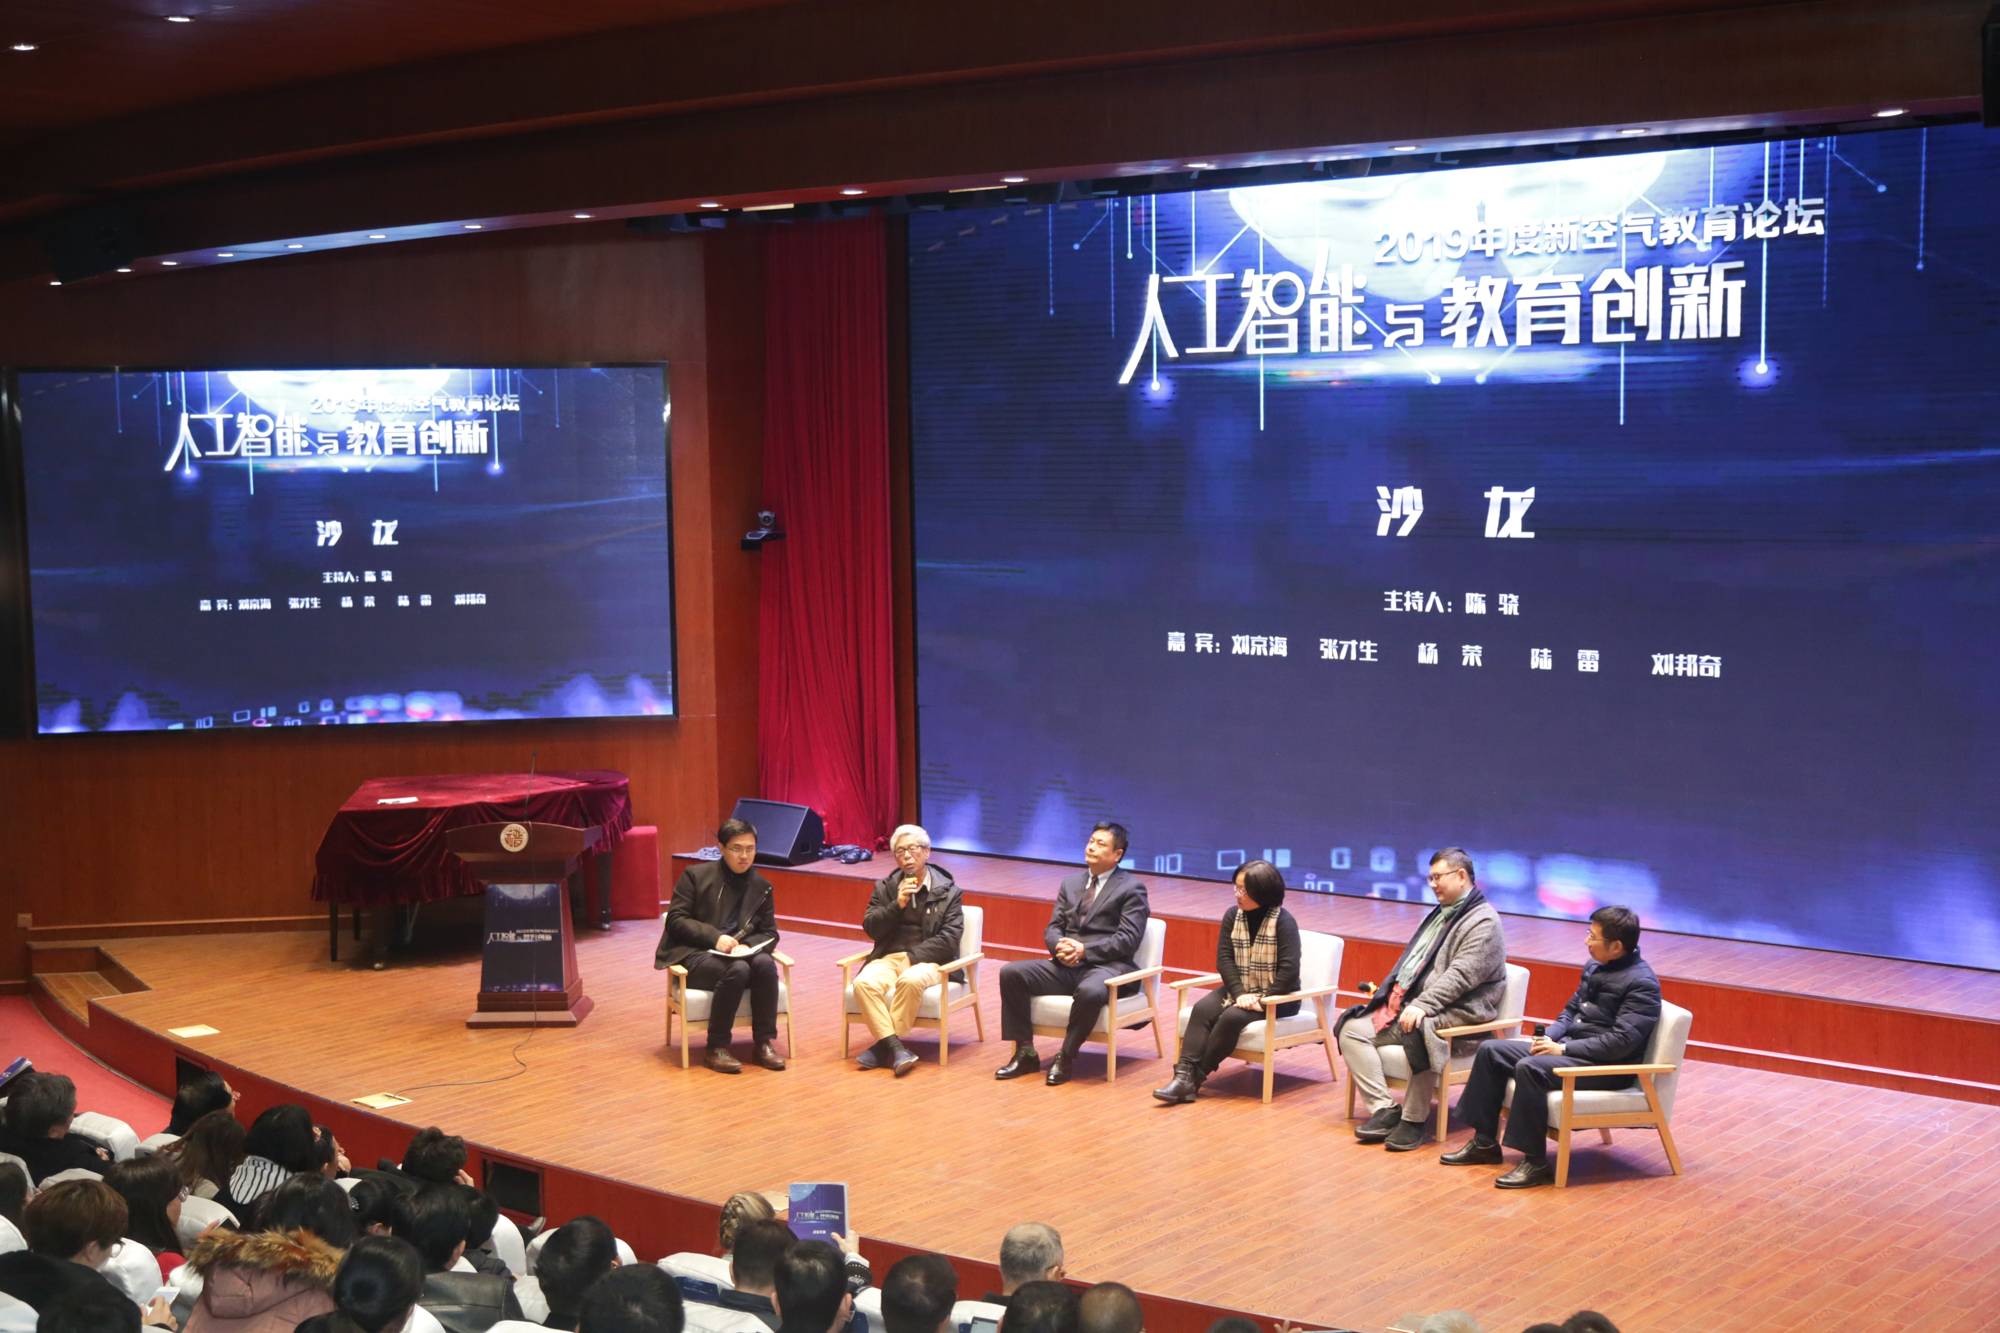 人工智能与教育创新 : 2019年度新空气教育论坛在沪举行